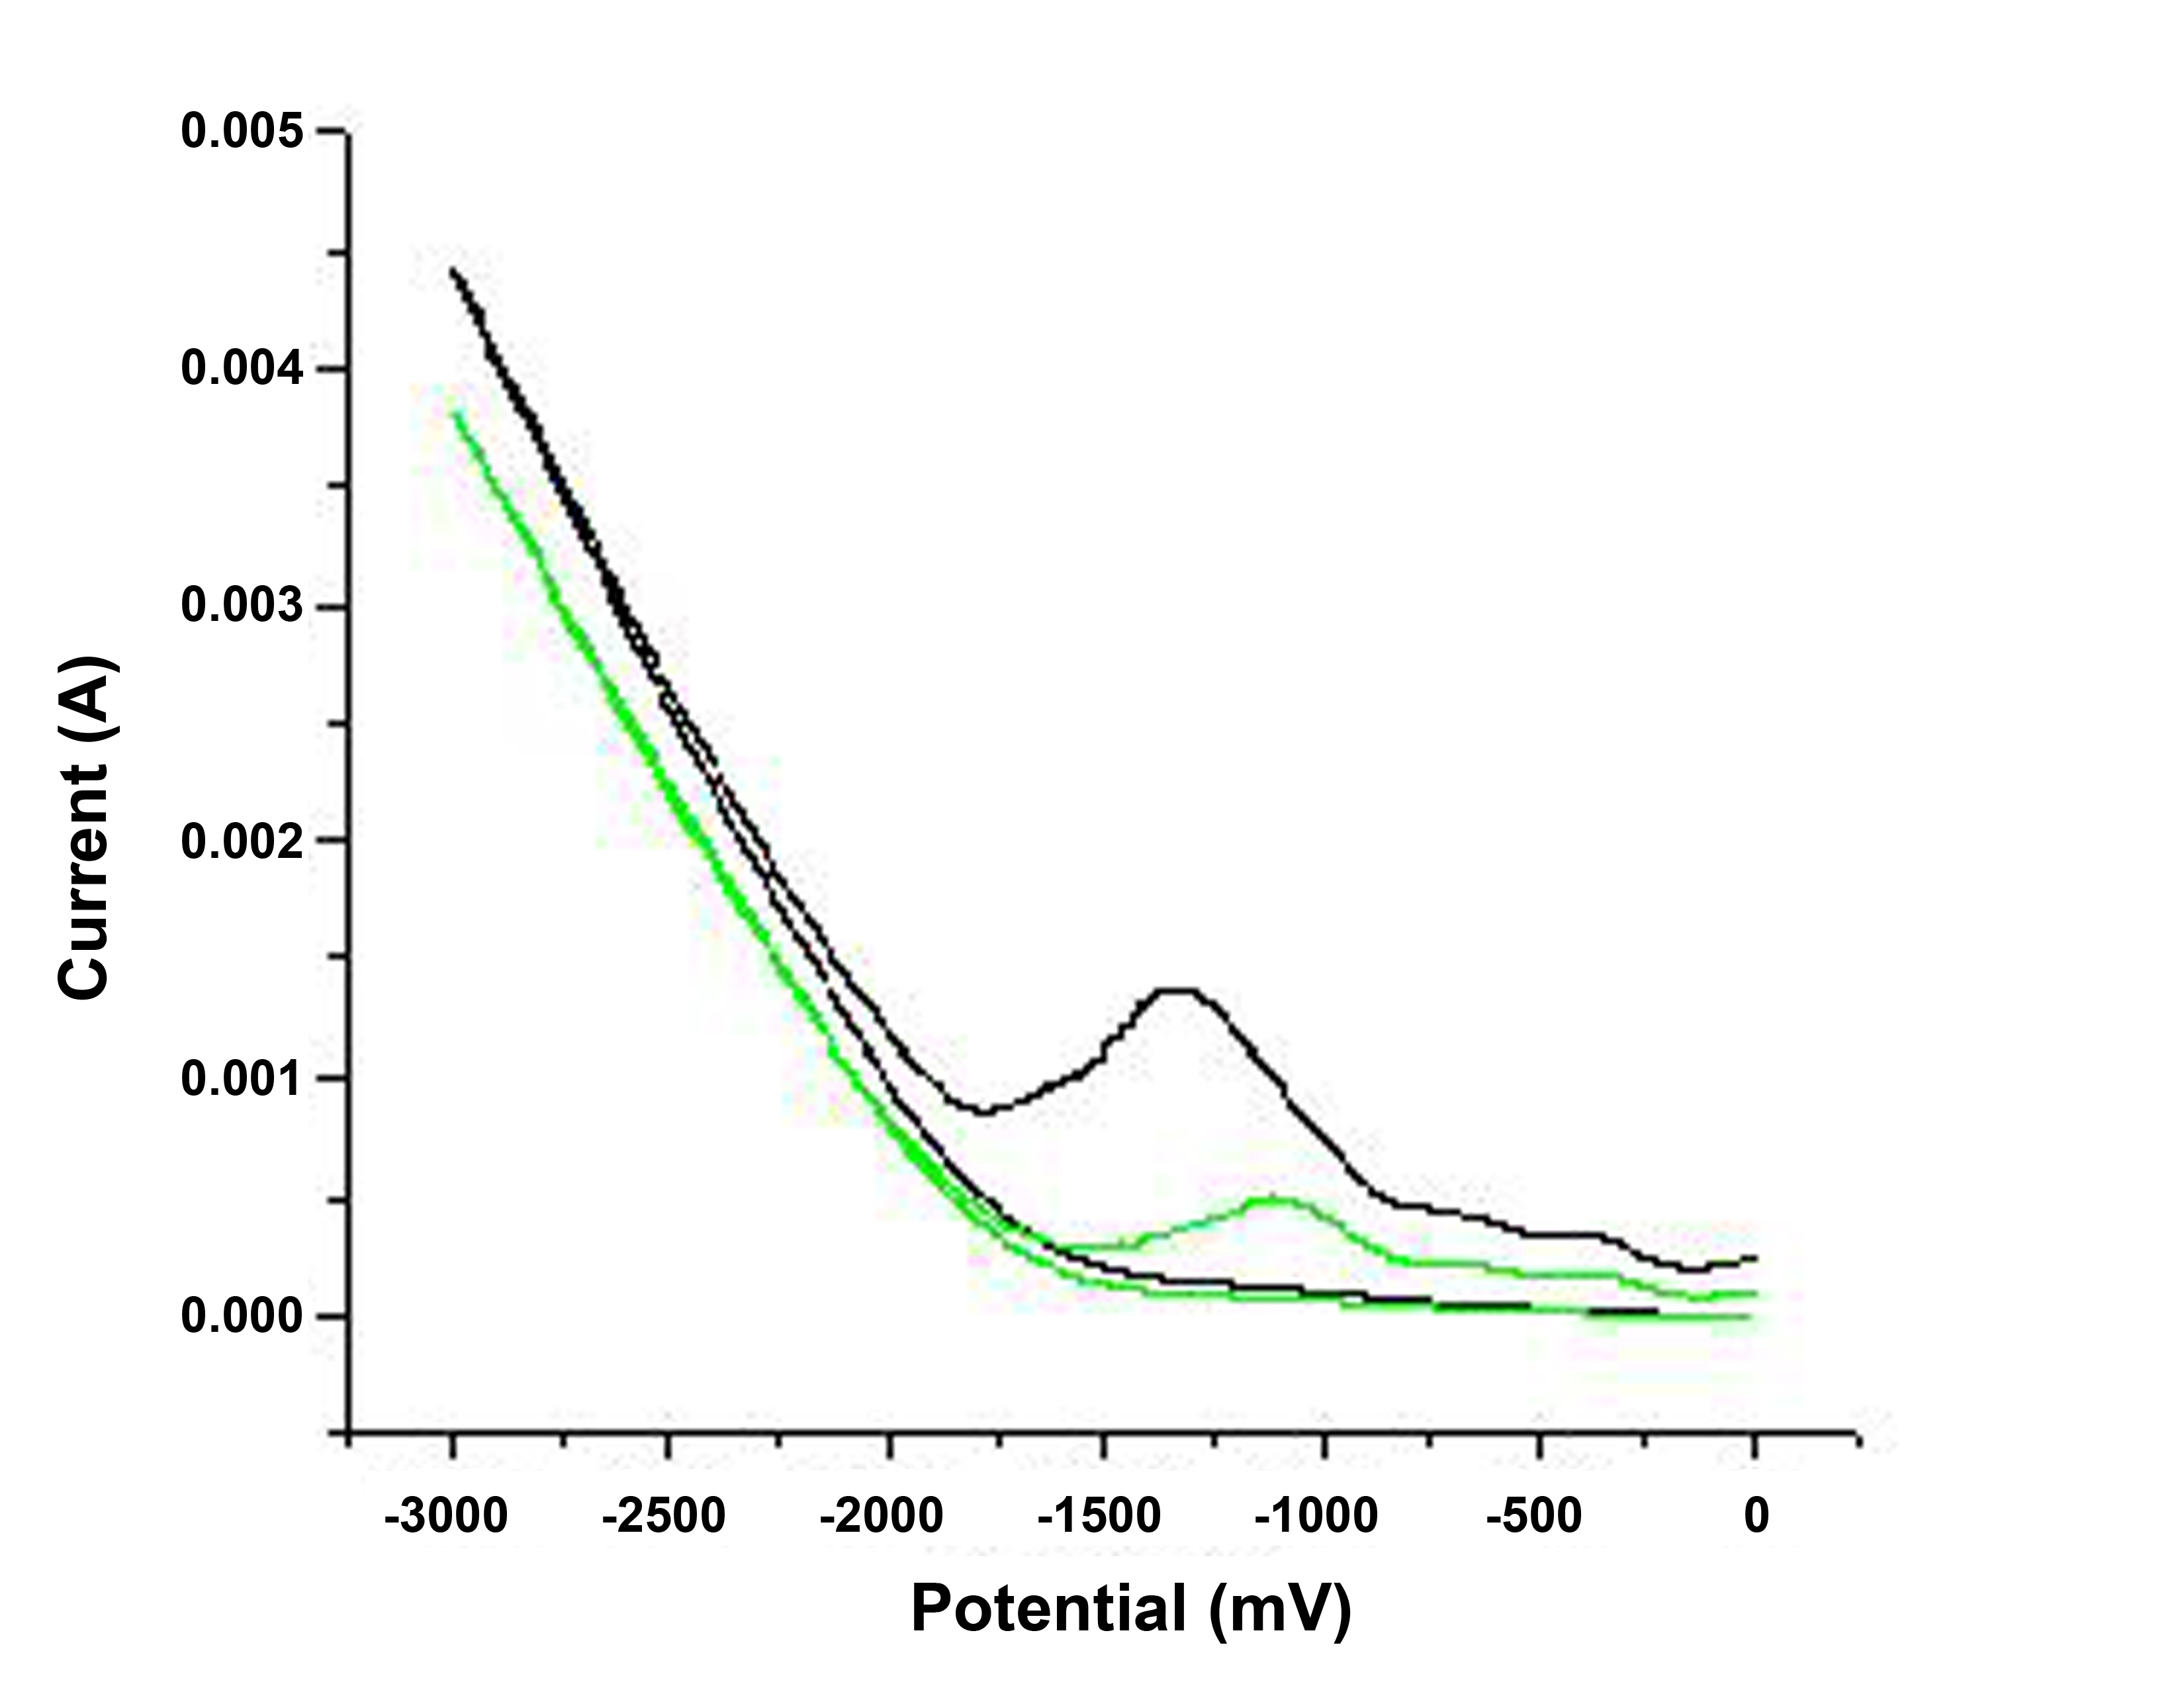 Curvas de reducción de dos muestras de XGNR preparadas en condiciones similares. La muestra con menor concentración se muestra por la curva verde, mientras que la muestra con mayor concentración se muestra como una curva negra.